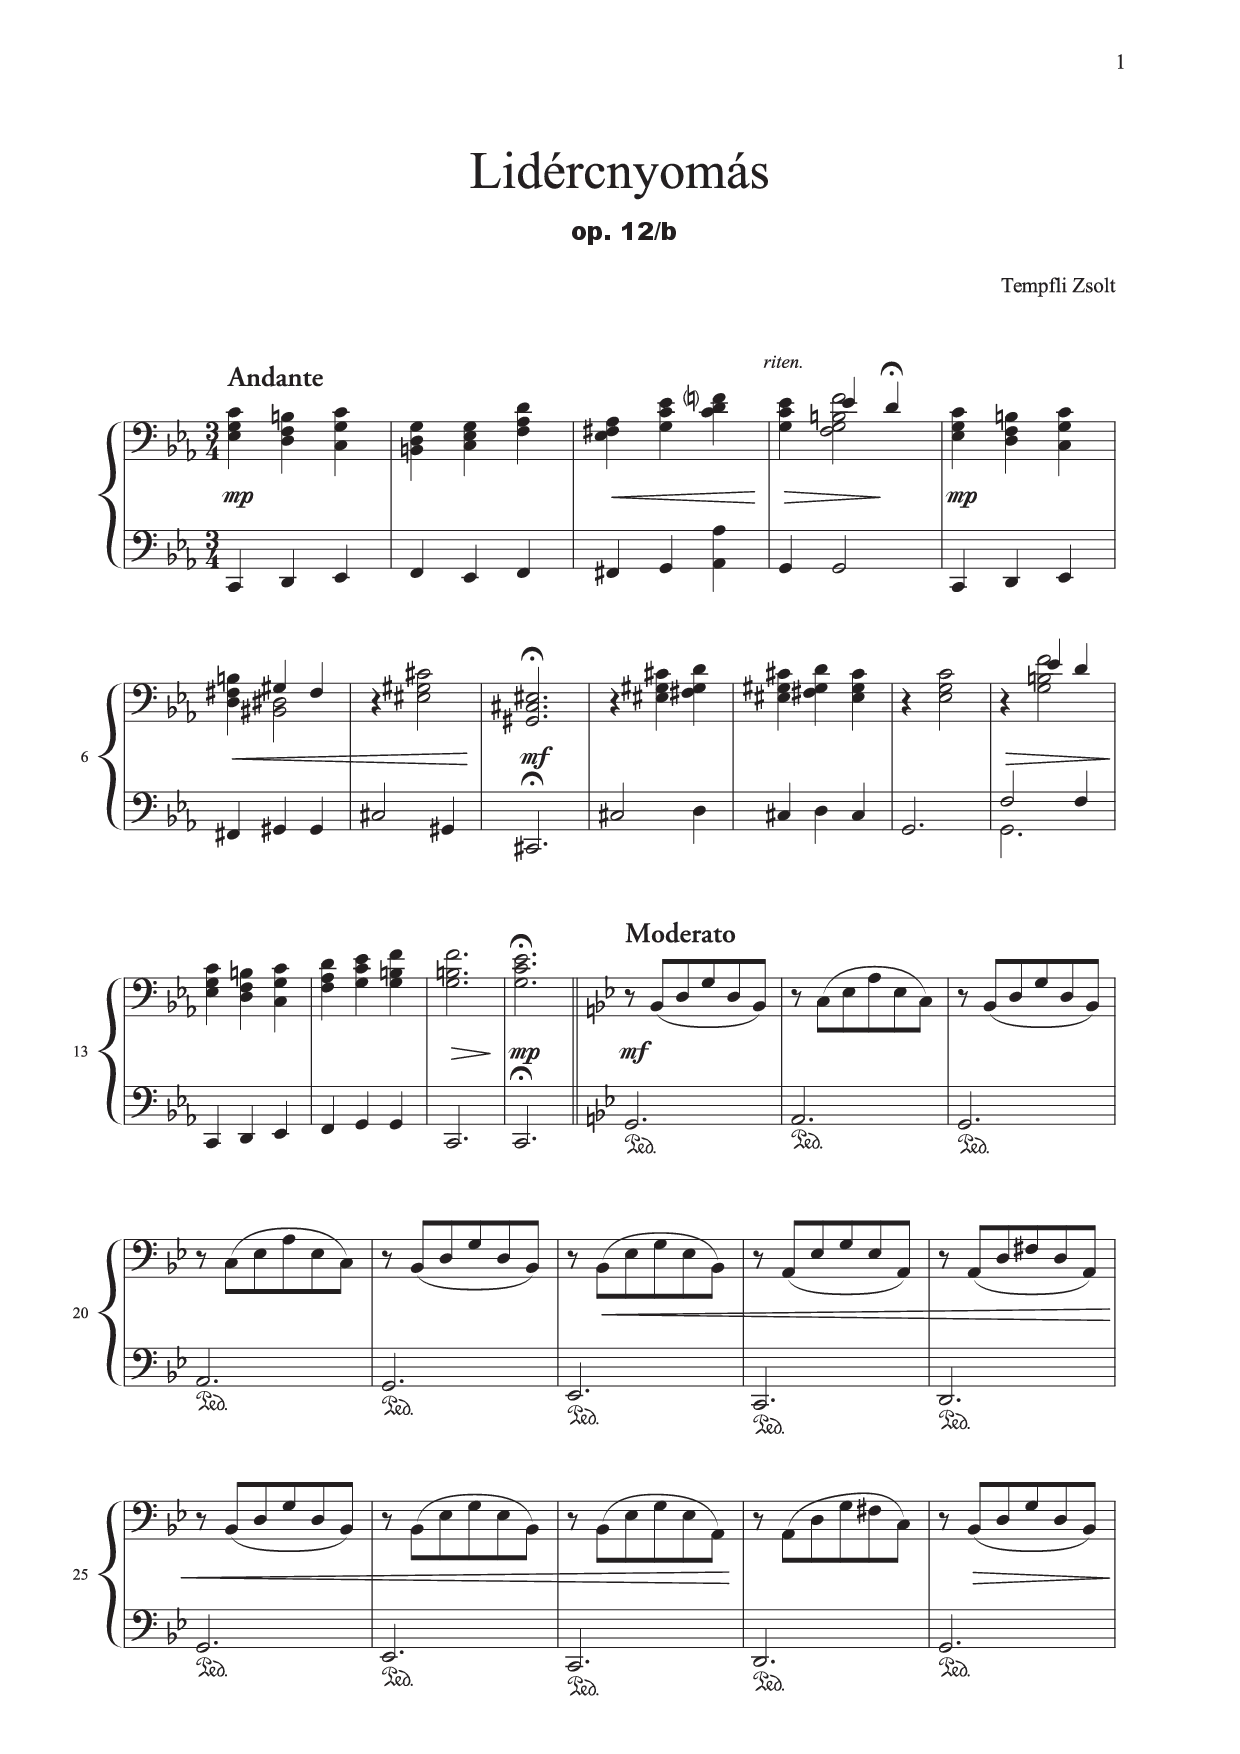 Zsolt Tempfli: Coşmarul nr. 2 pentru pian, op. 12